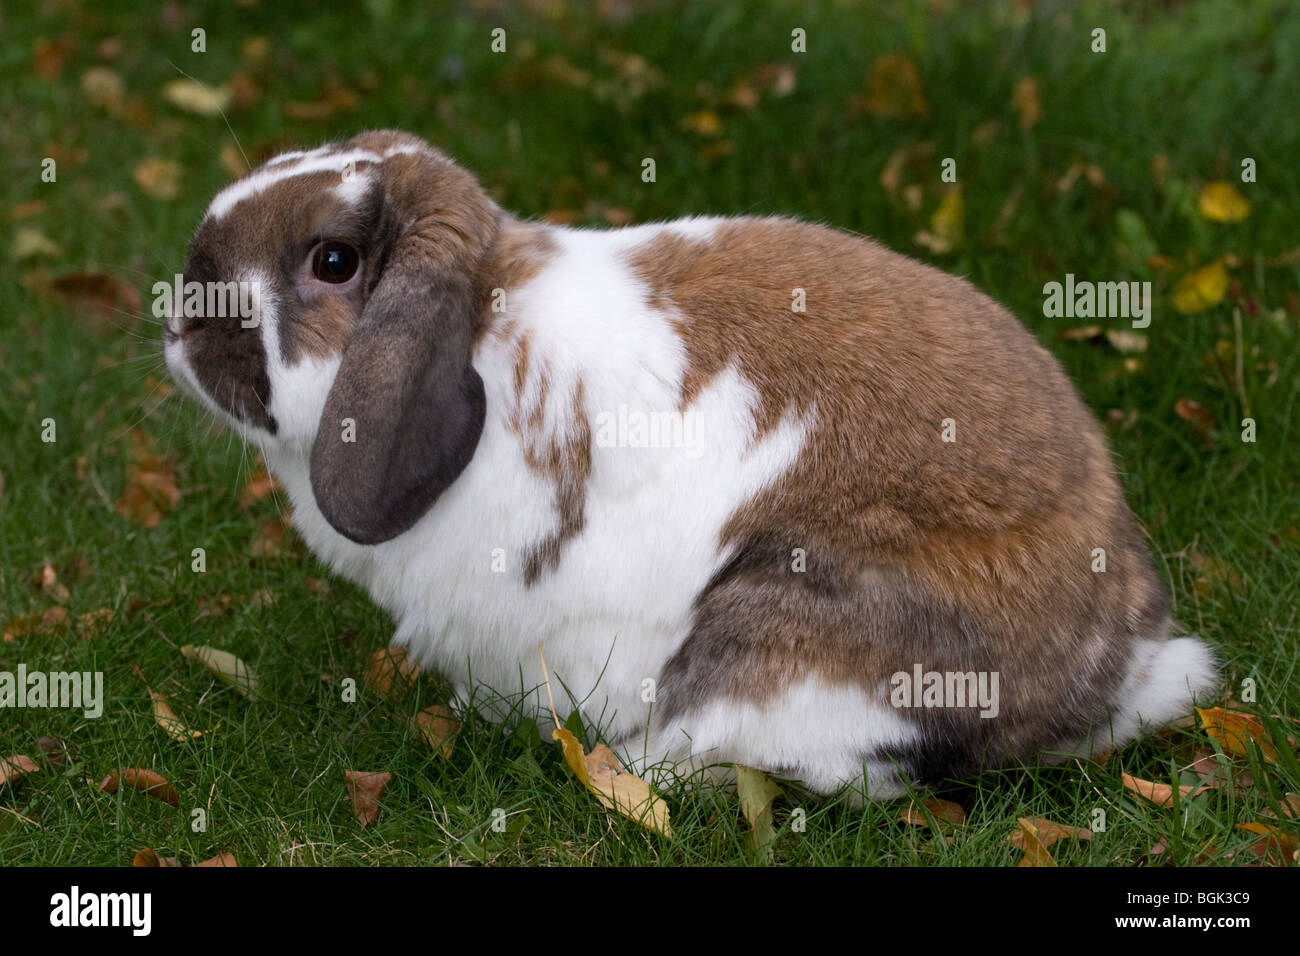 holland lop pet rabbits